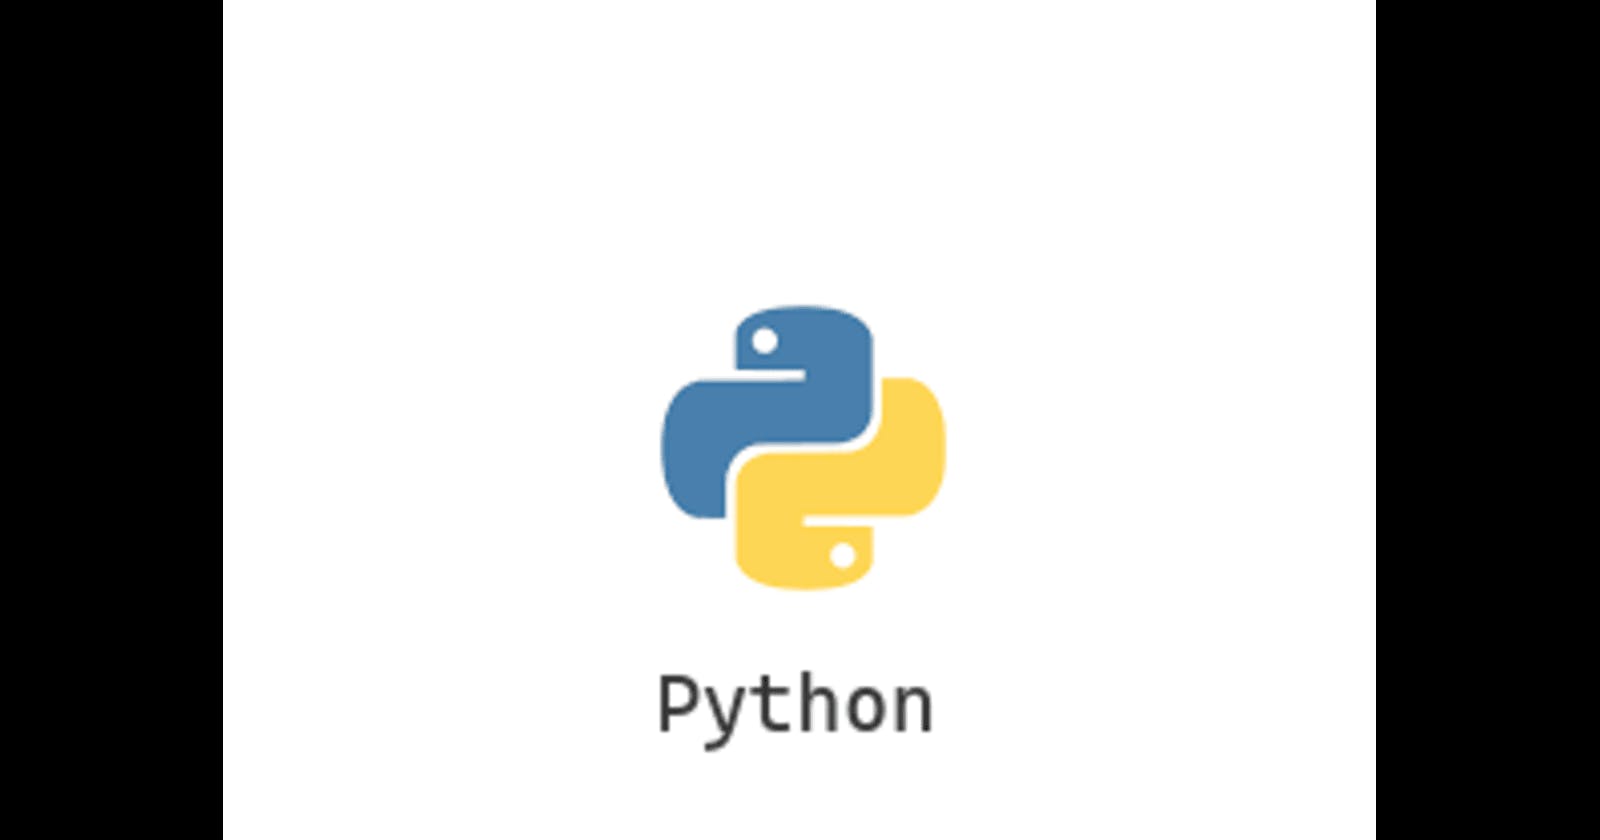 Day 13 - Basic Python programming